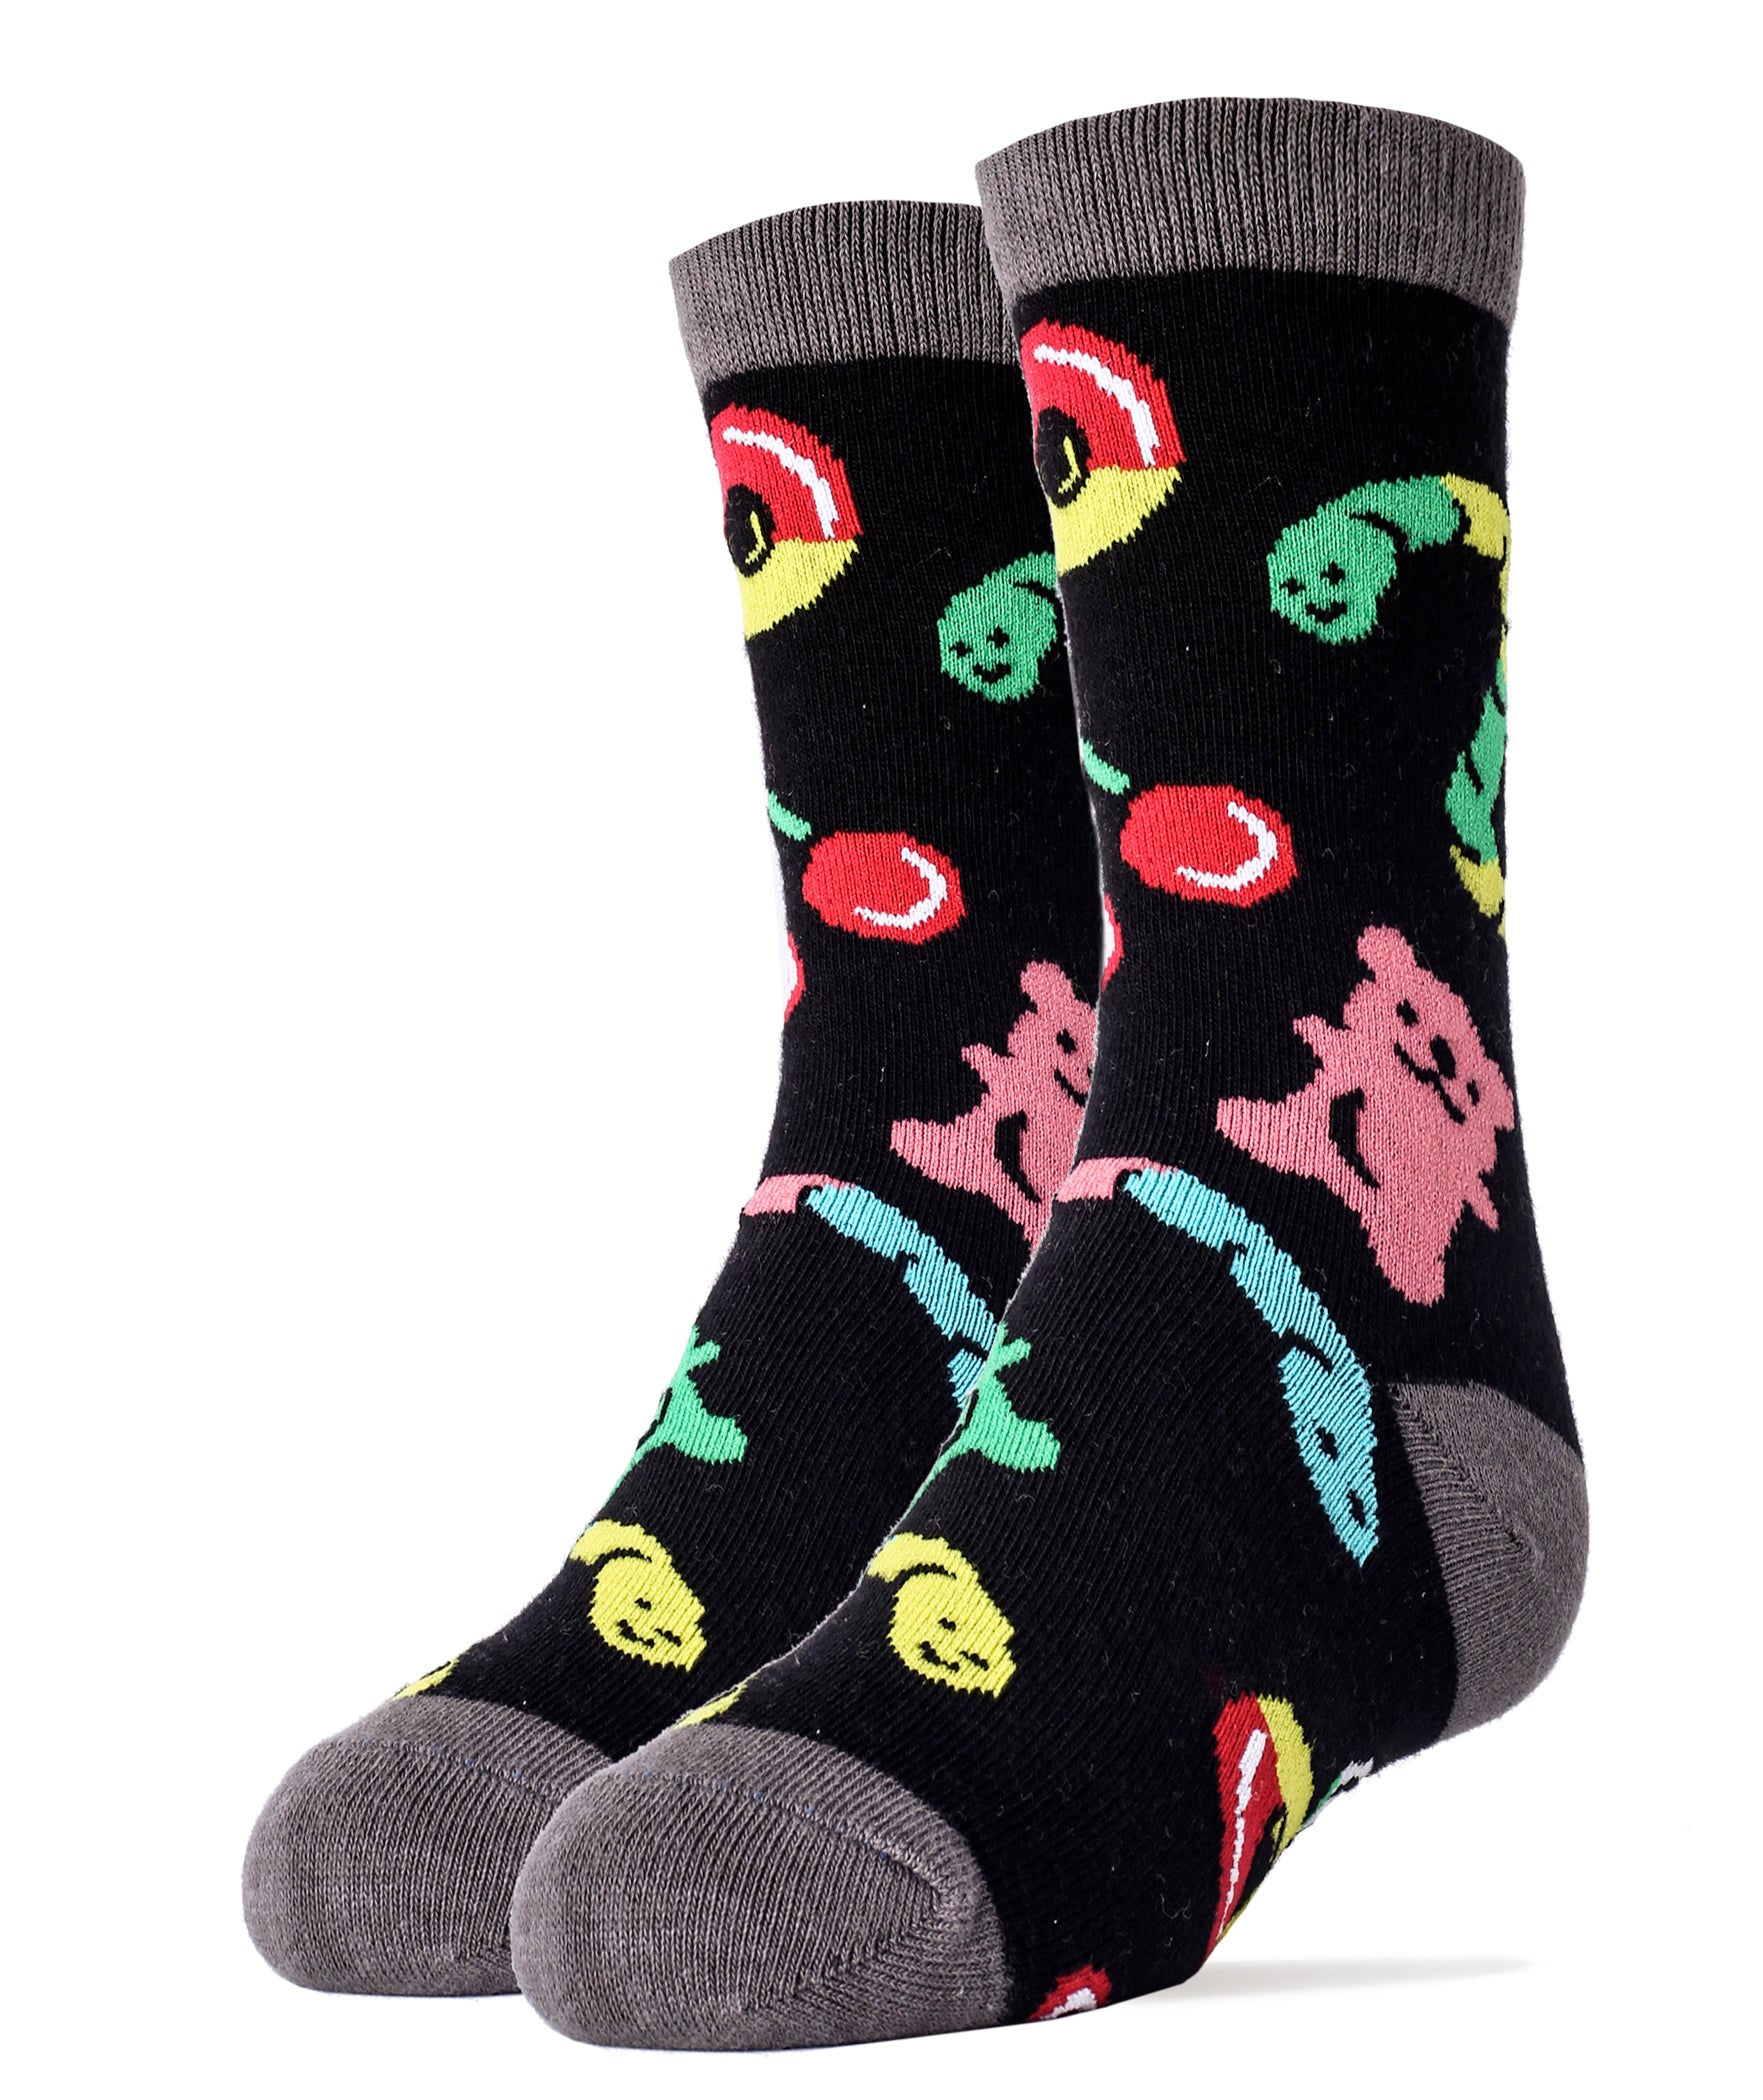 Gummies Socks | Novelty Crew Socks for Kids